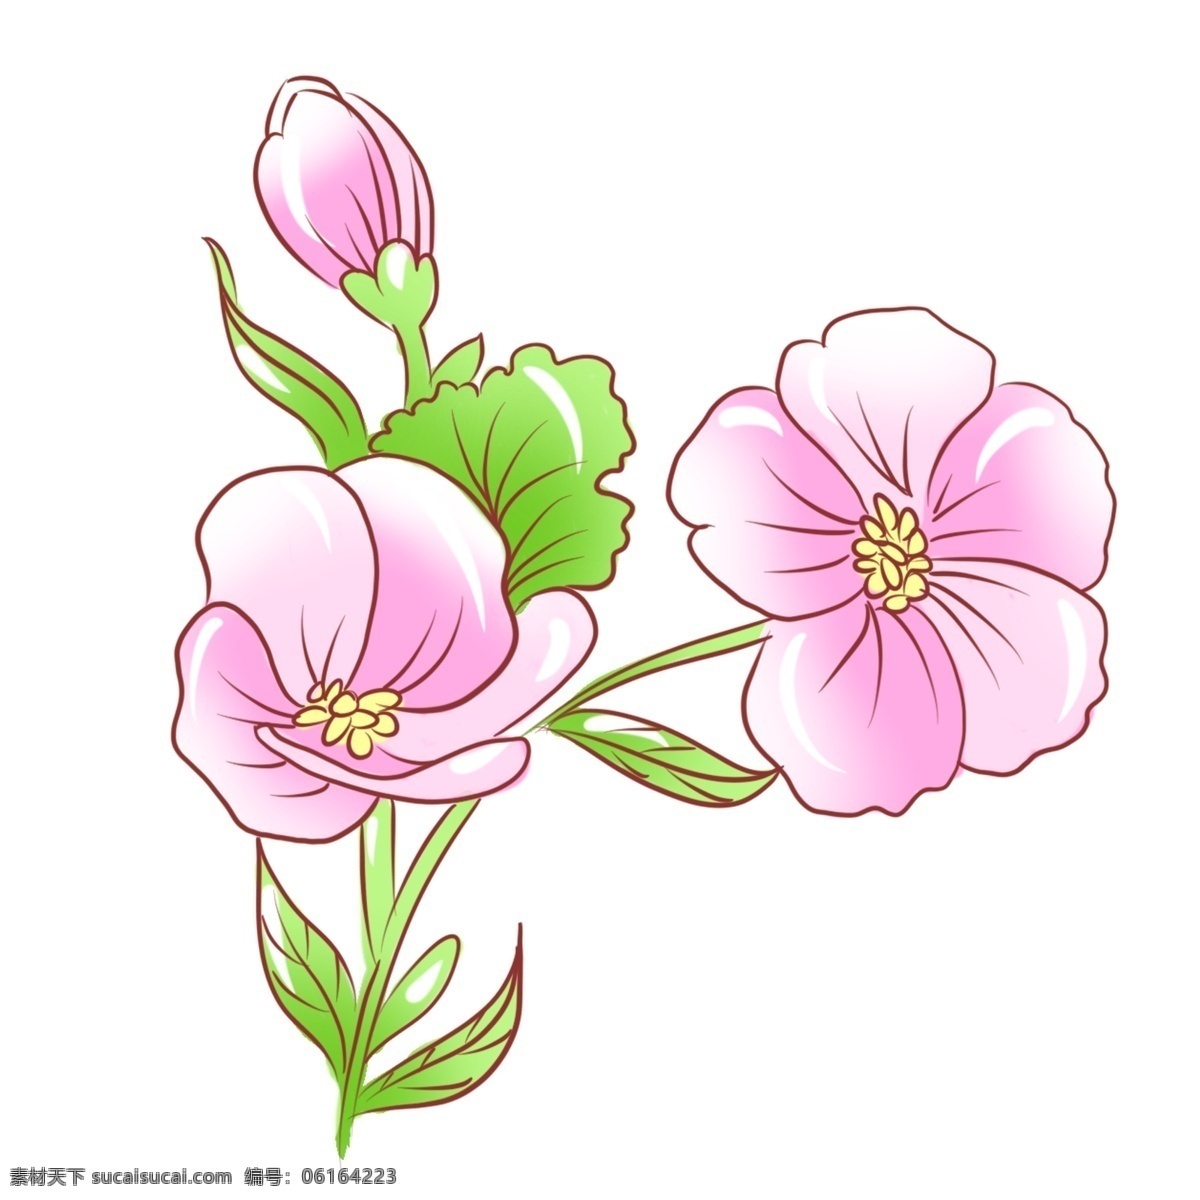 手绘 花卉 桃花 元素 商用 手绘花 植物 手绘桃花 手绘植物 桃花节